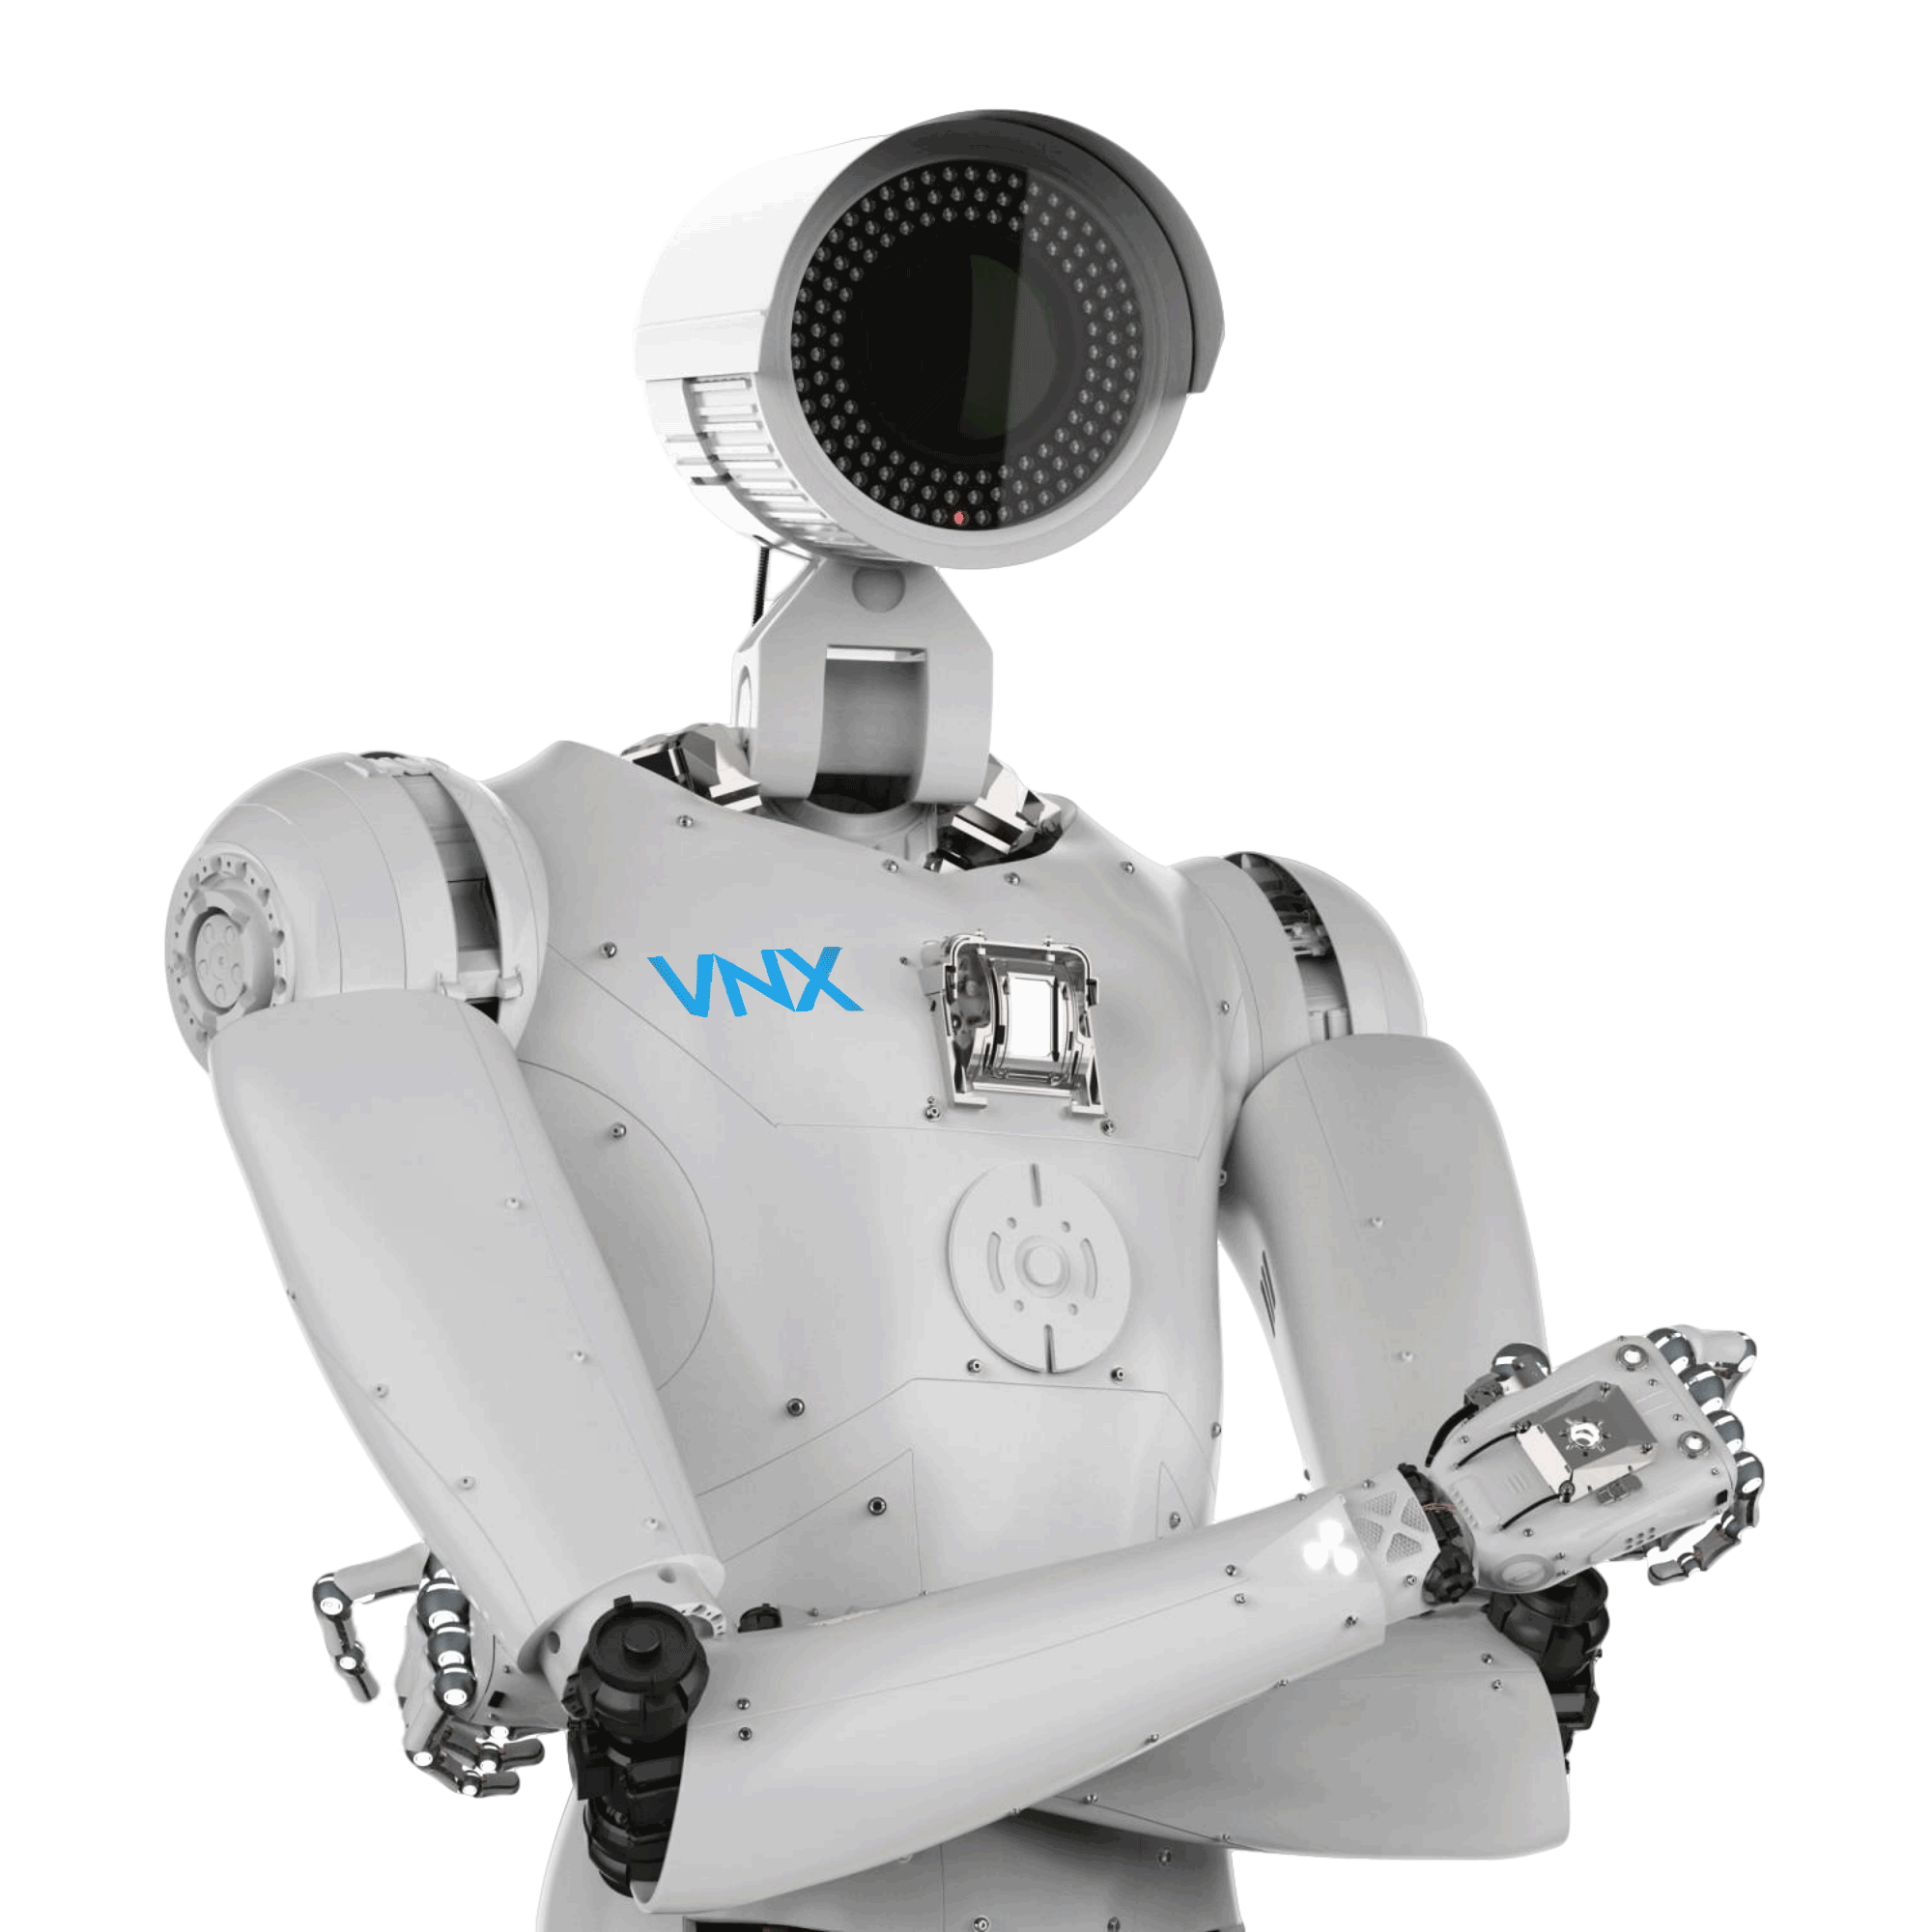 vnx-robot-image